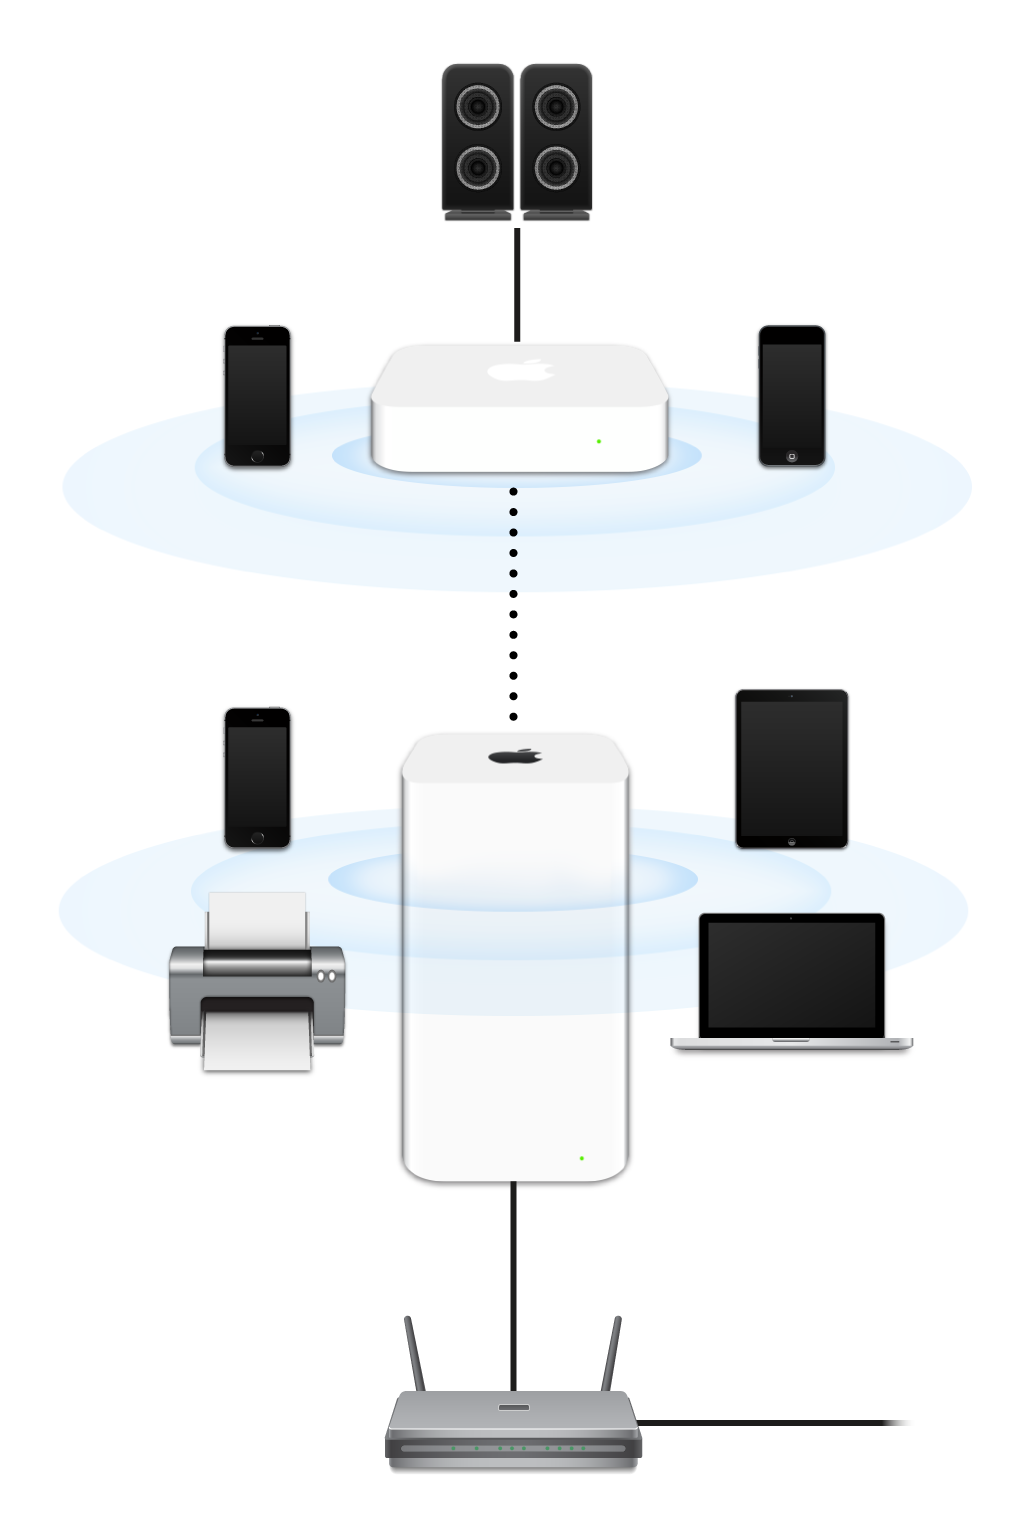 Uma rede ampliada, incluindo um AirPort Extreme e AirPort Express, conectada a um modem e transmitindo para diversos dispositivos.